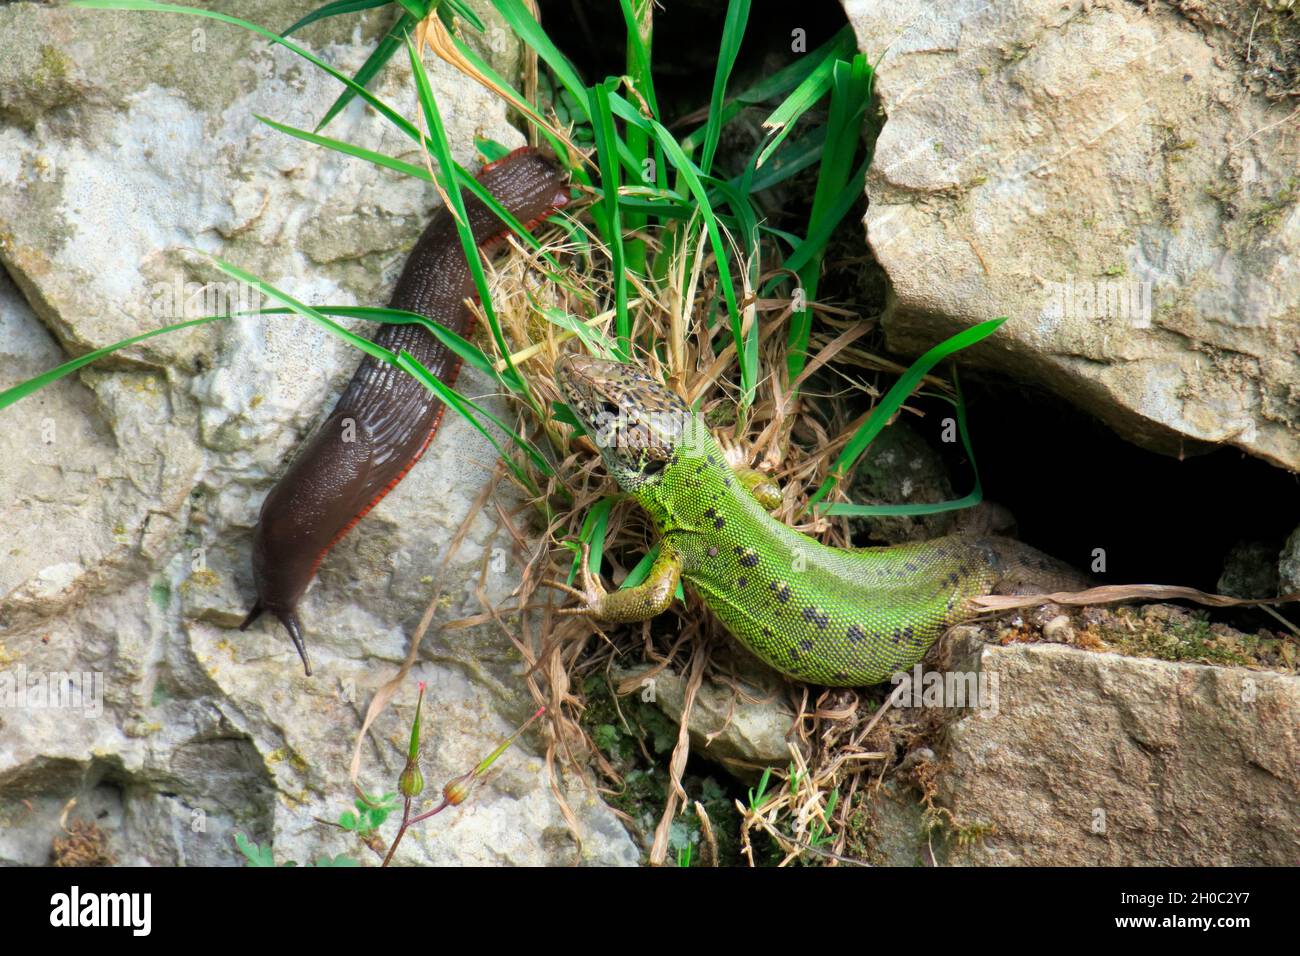 Schreiber's Green Lizard (Lacerta schreiberi) and slug, Asturias, Spain Stock Photo